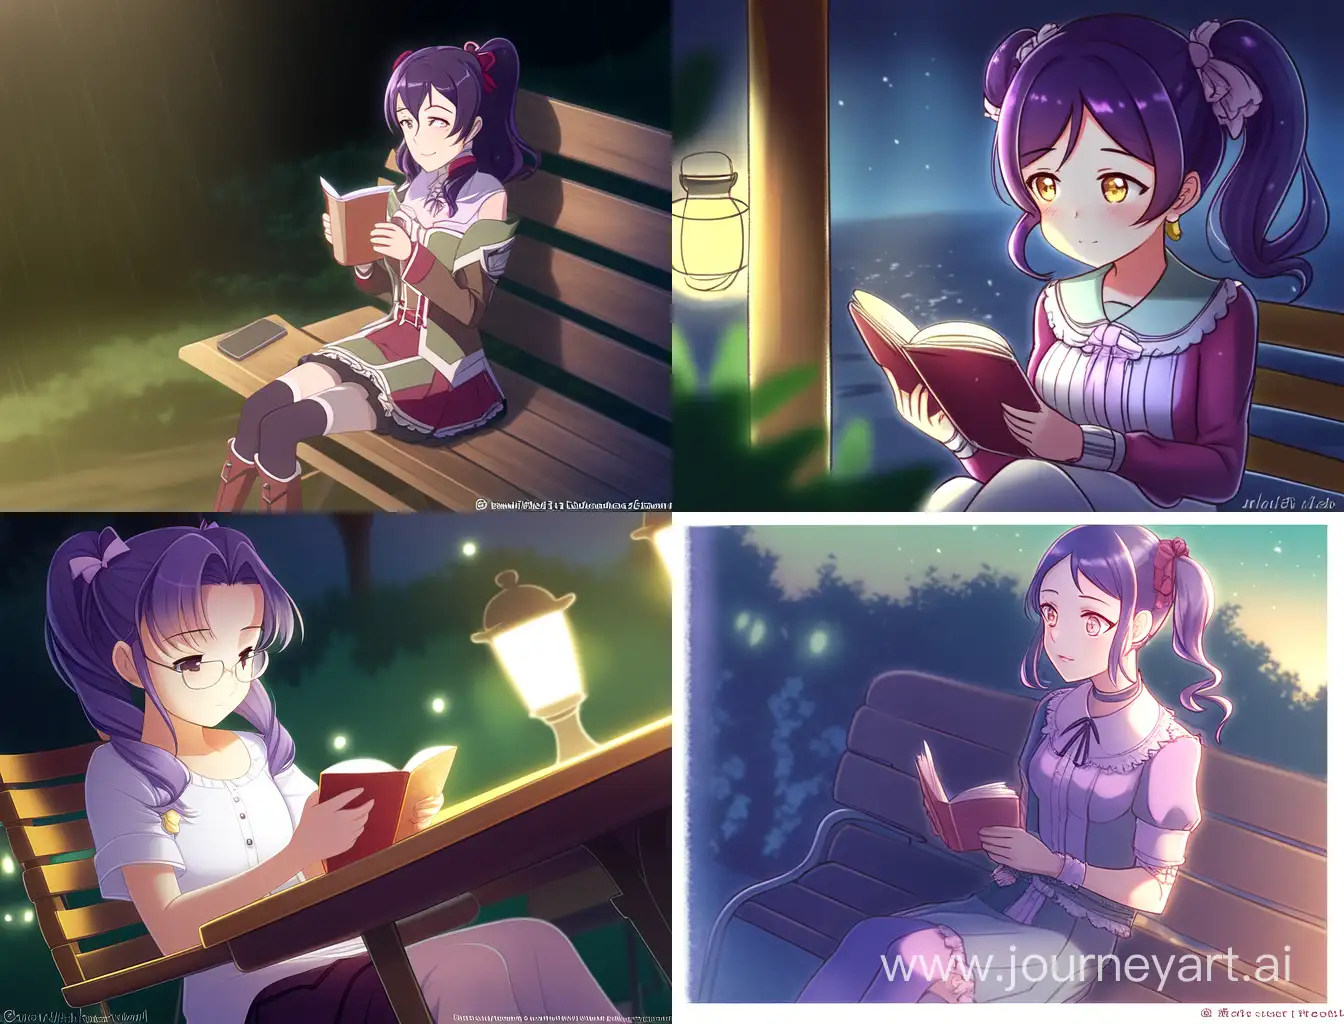 Девушка, темно-фиолетовые волосы с 2 короткими хвостиками сверху, 4 размер груди, сидит на лавочке, вечер, читает книгу